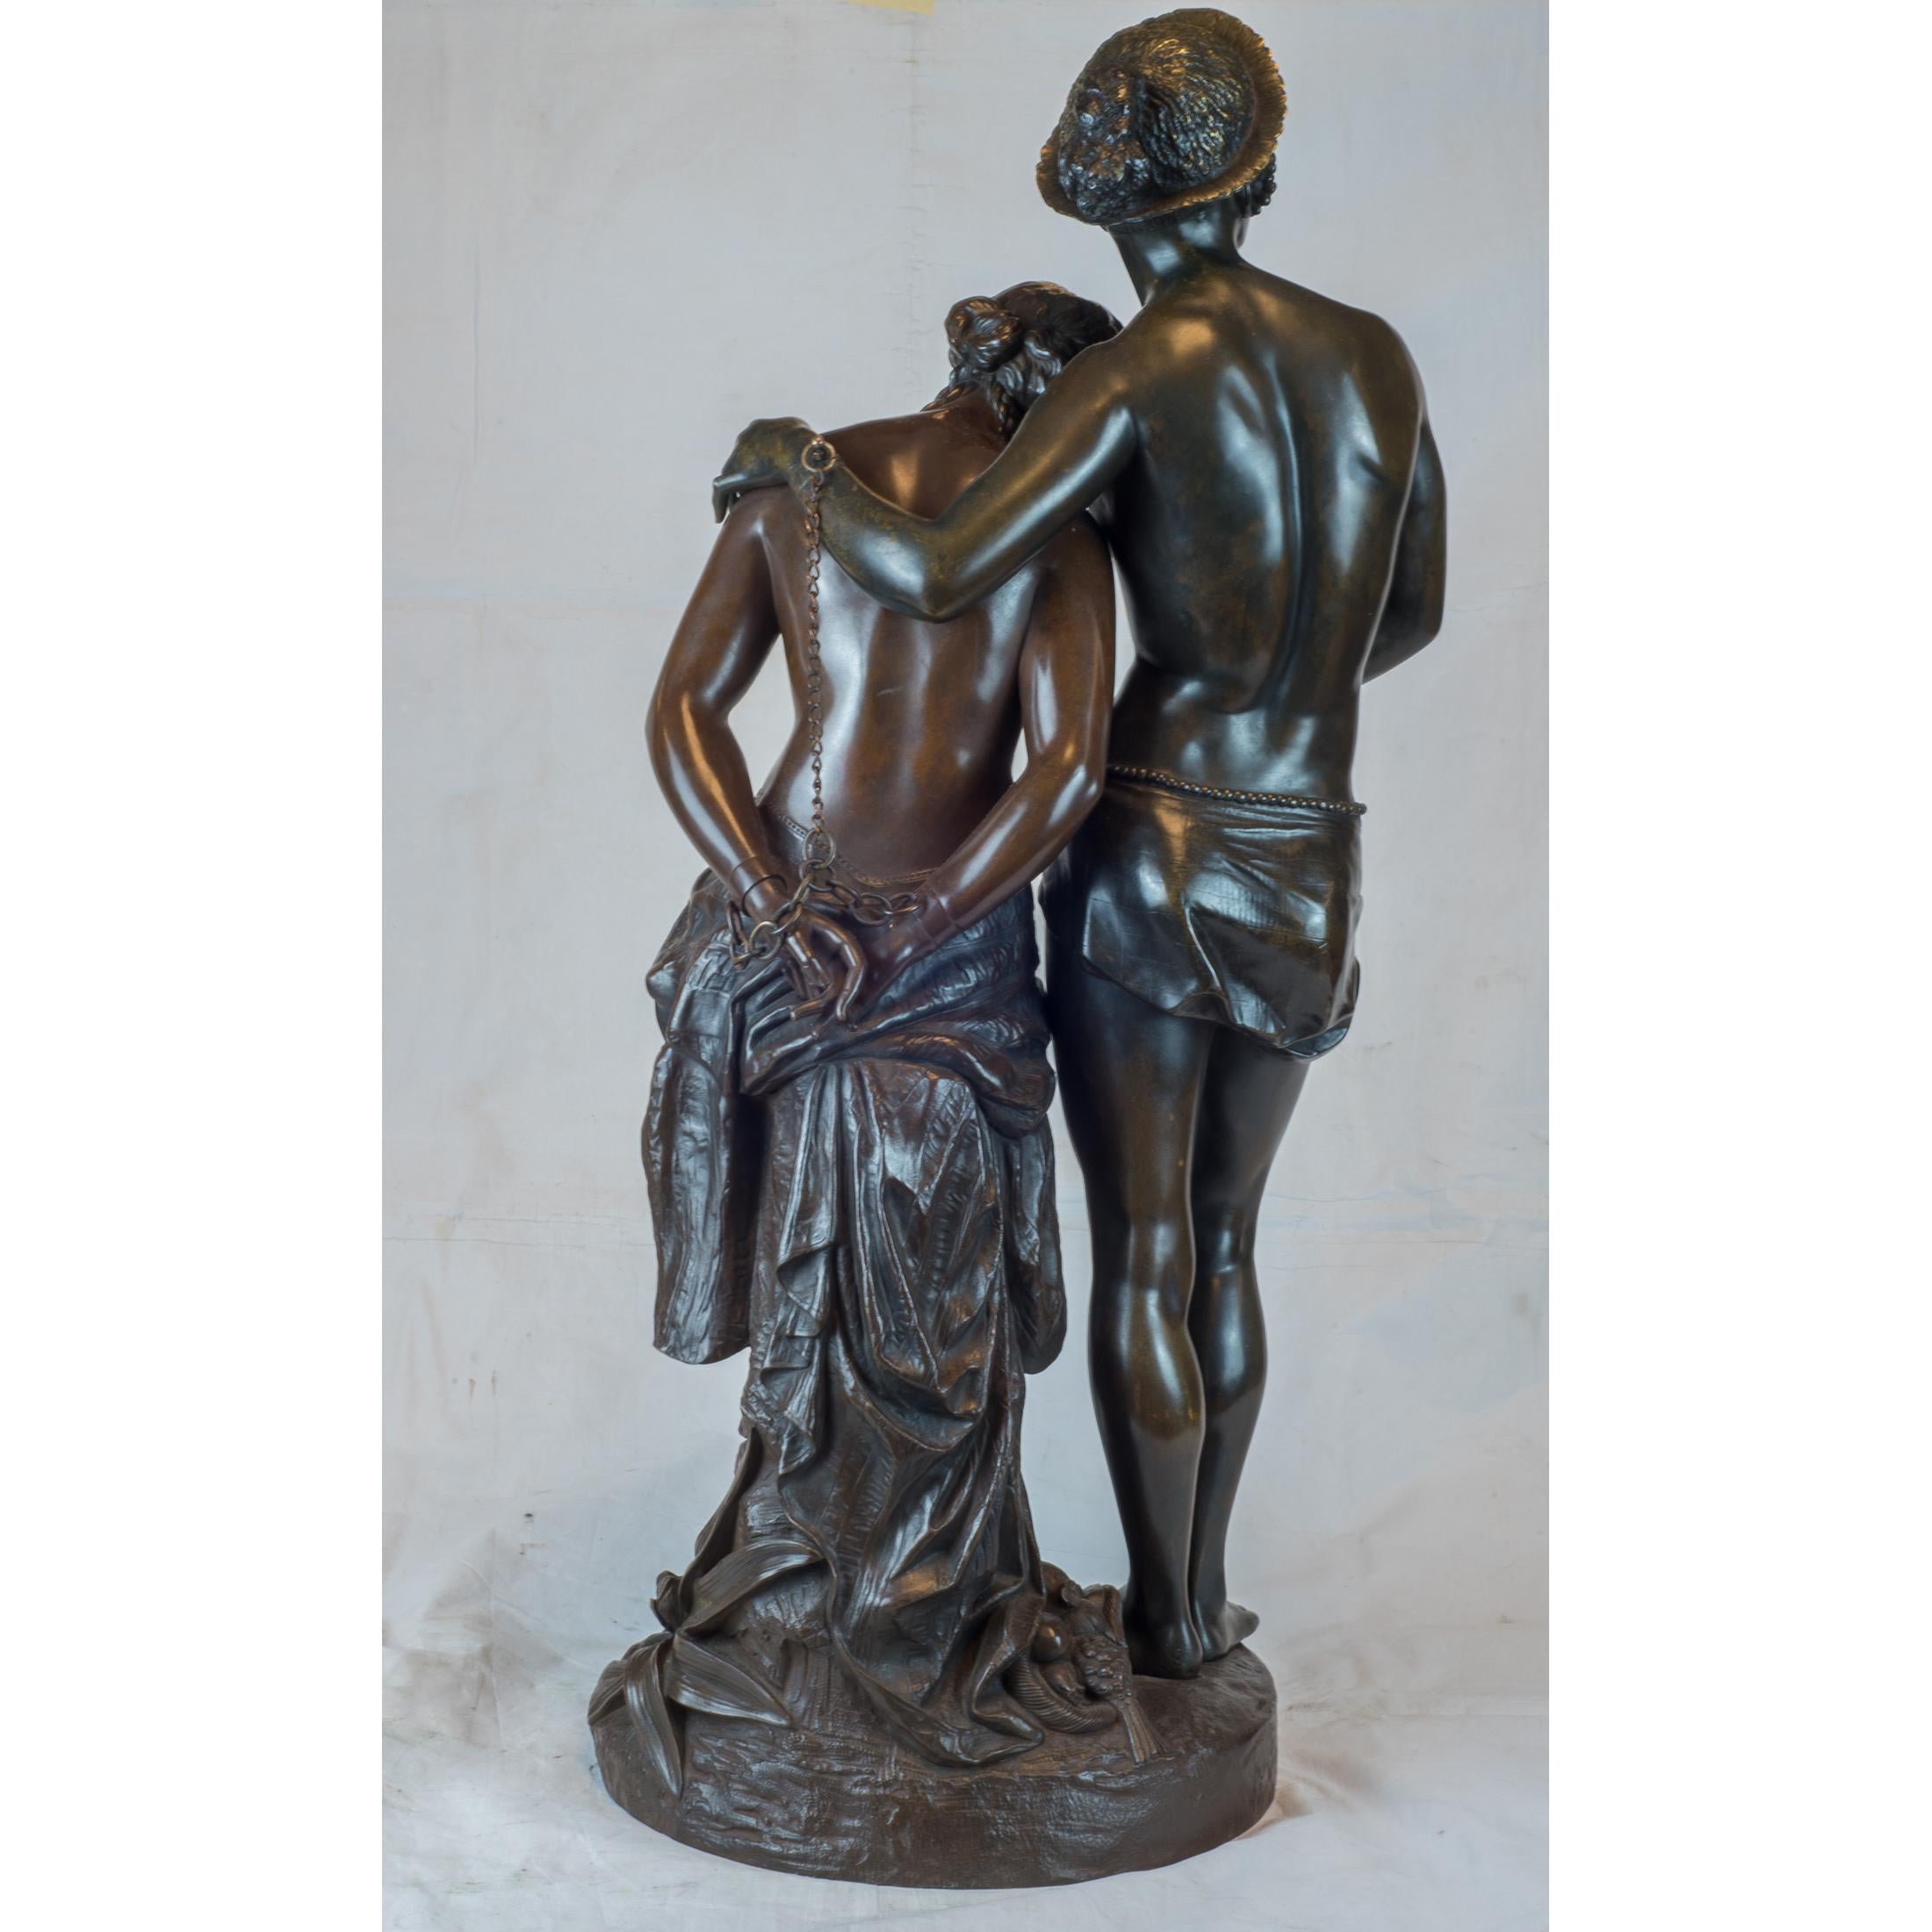 A Fine Edmond Levêque Patinated Bronze of Les Deux Esclaves - Sculpture by Edmond Louis Auguste Levêque